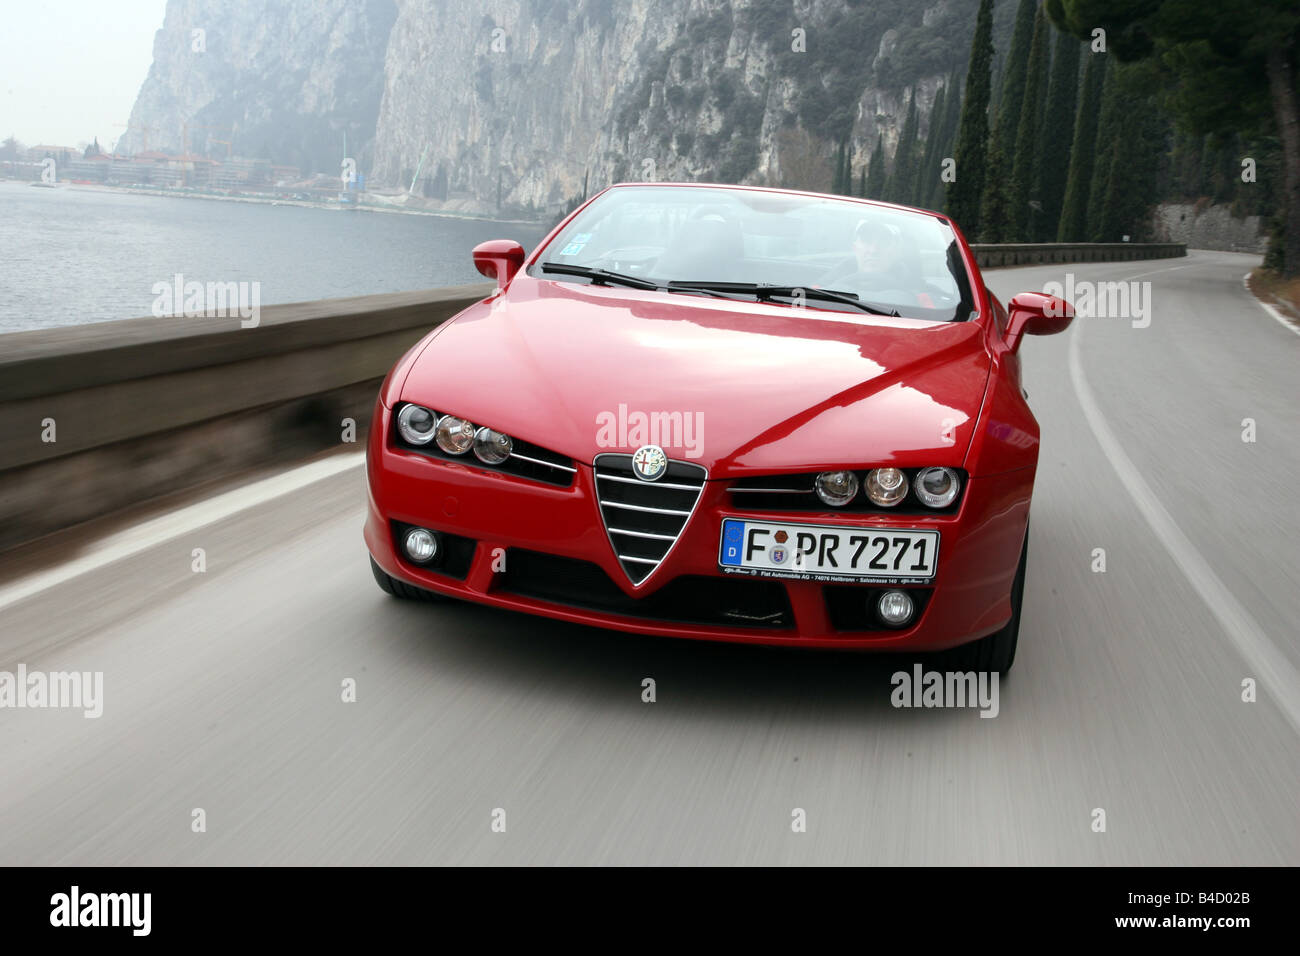 Alfa Romeo Spider 3.2 JTS V6 24V Q4 Exclusive, Modell Jahr 2006-, rot, fahren, schräg von vorne, Vorderansicht, Land ro Stockfoto